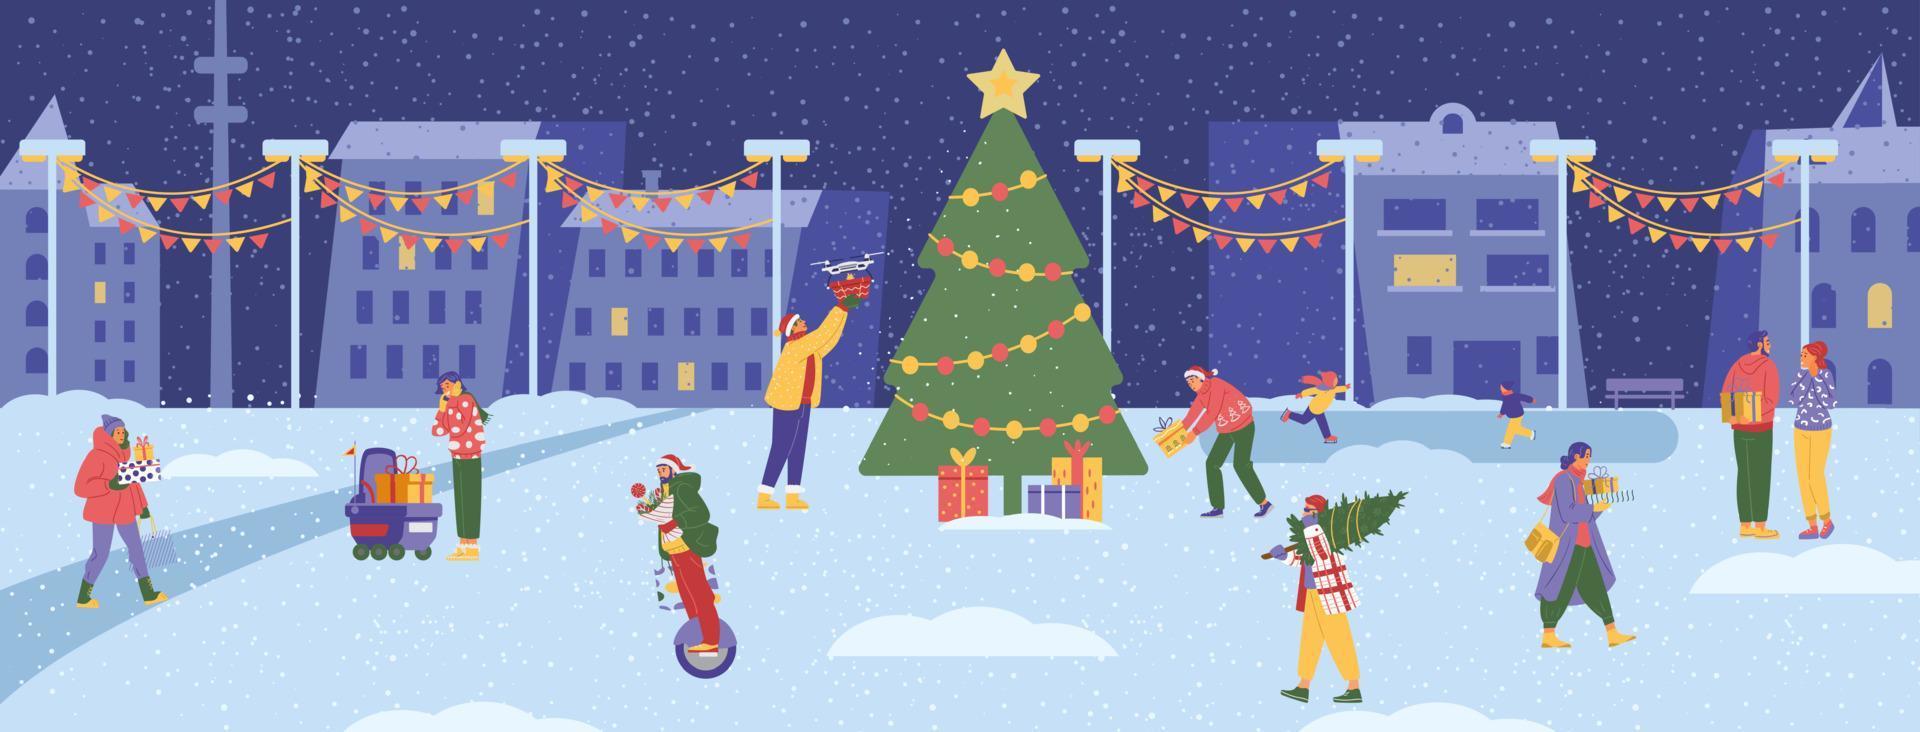 escena de la ciudad de invierno con un gran árbol de navidad y gente caminando con cajas de regalo. banner horizontal de vector plano.